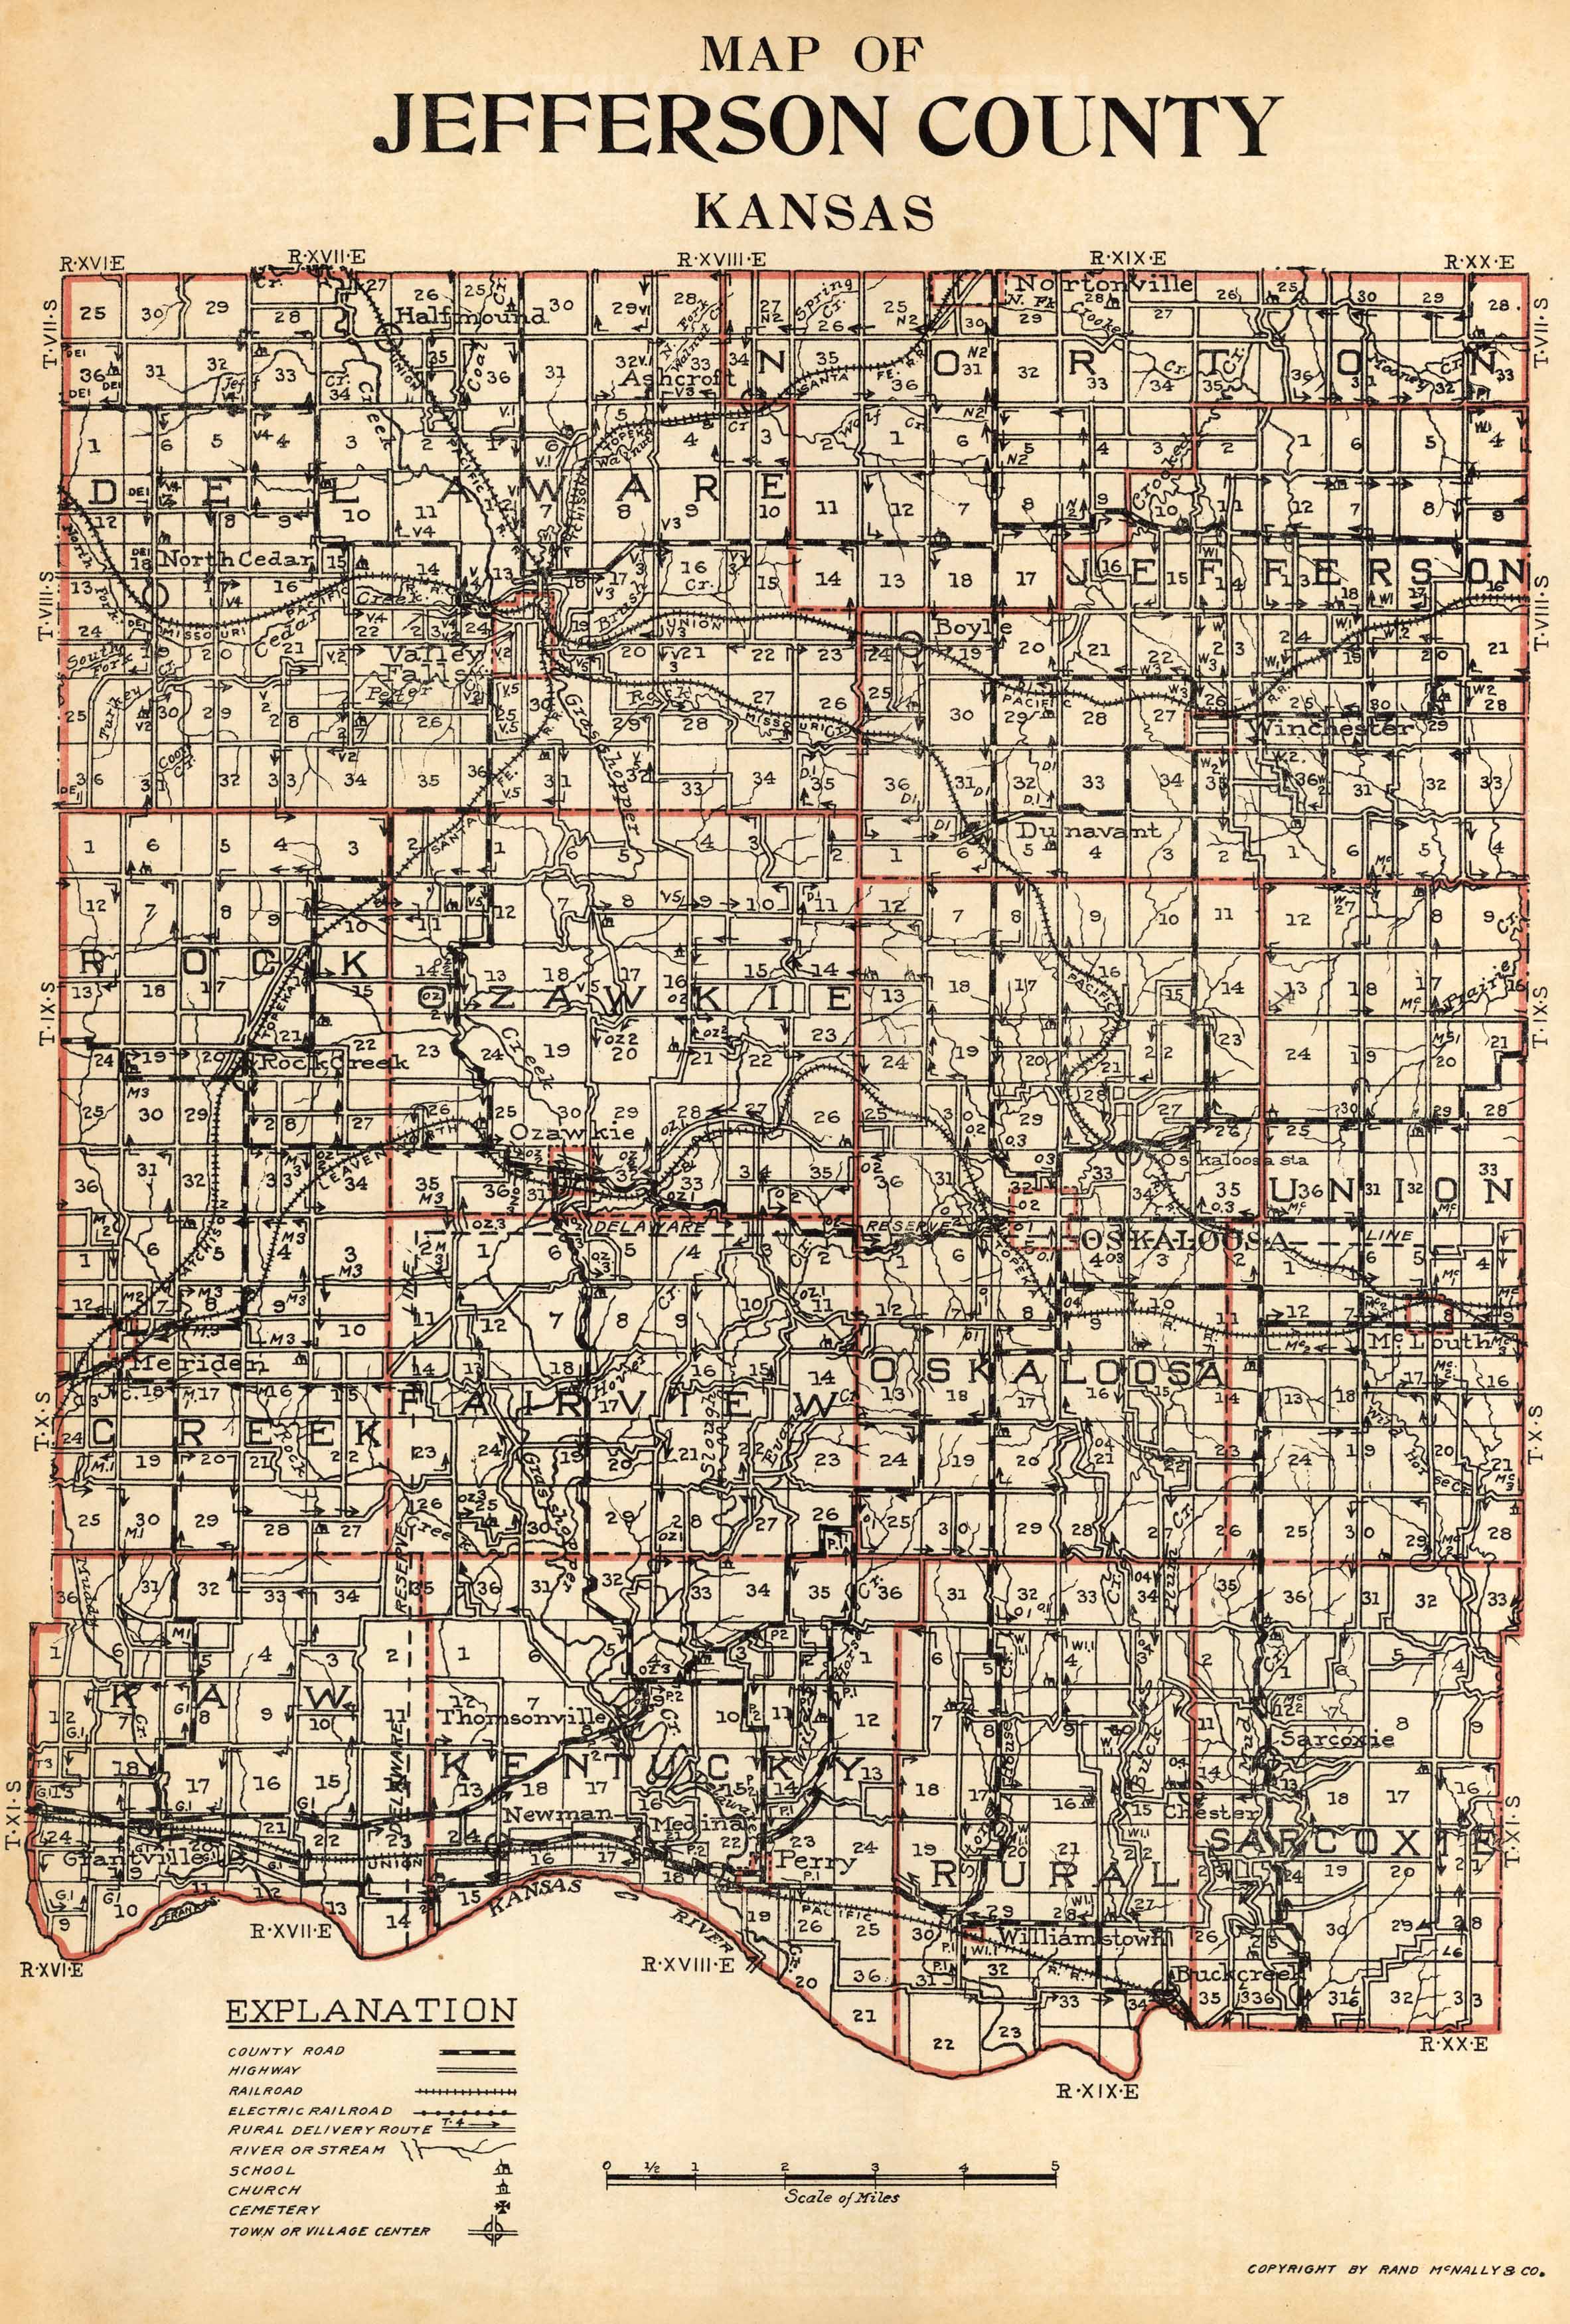 McNally #39 s 1923 Map of Jefferson County Kansas Art Source International